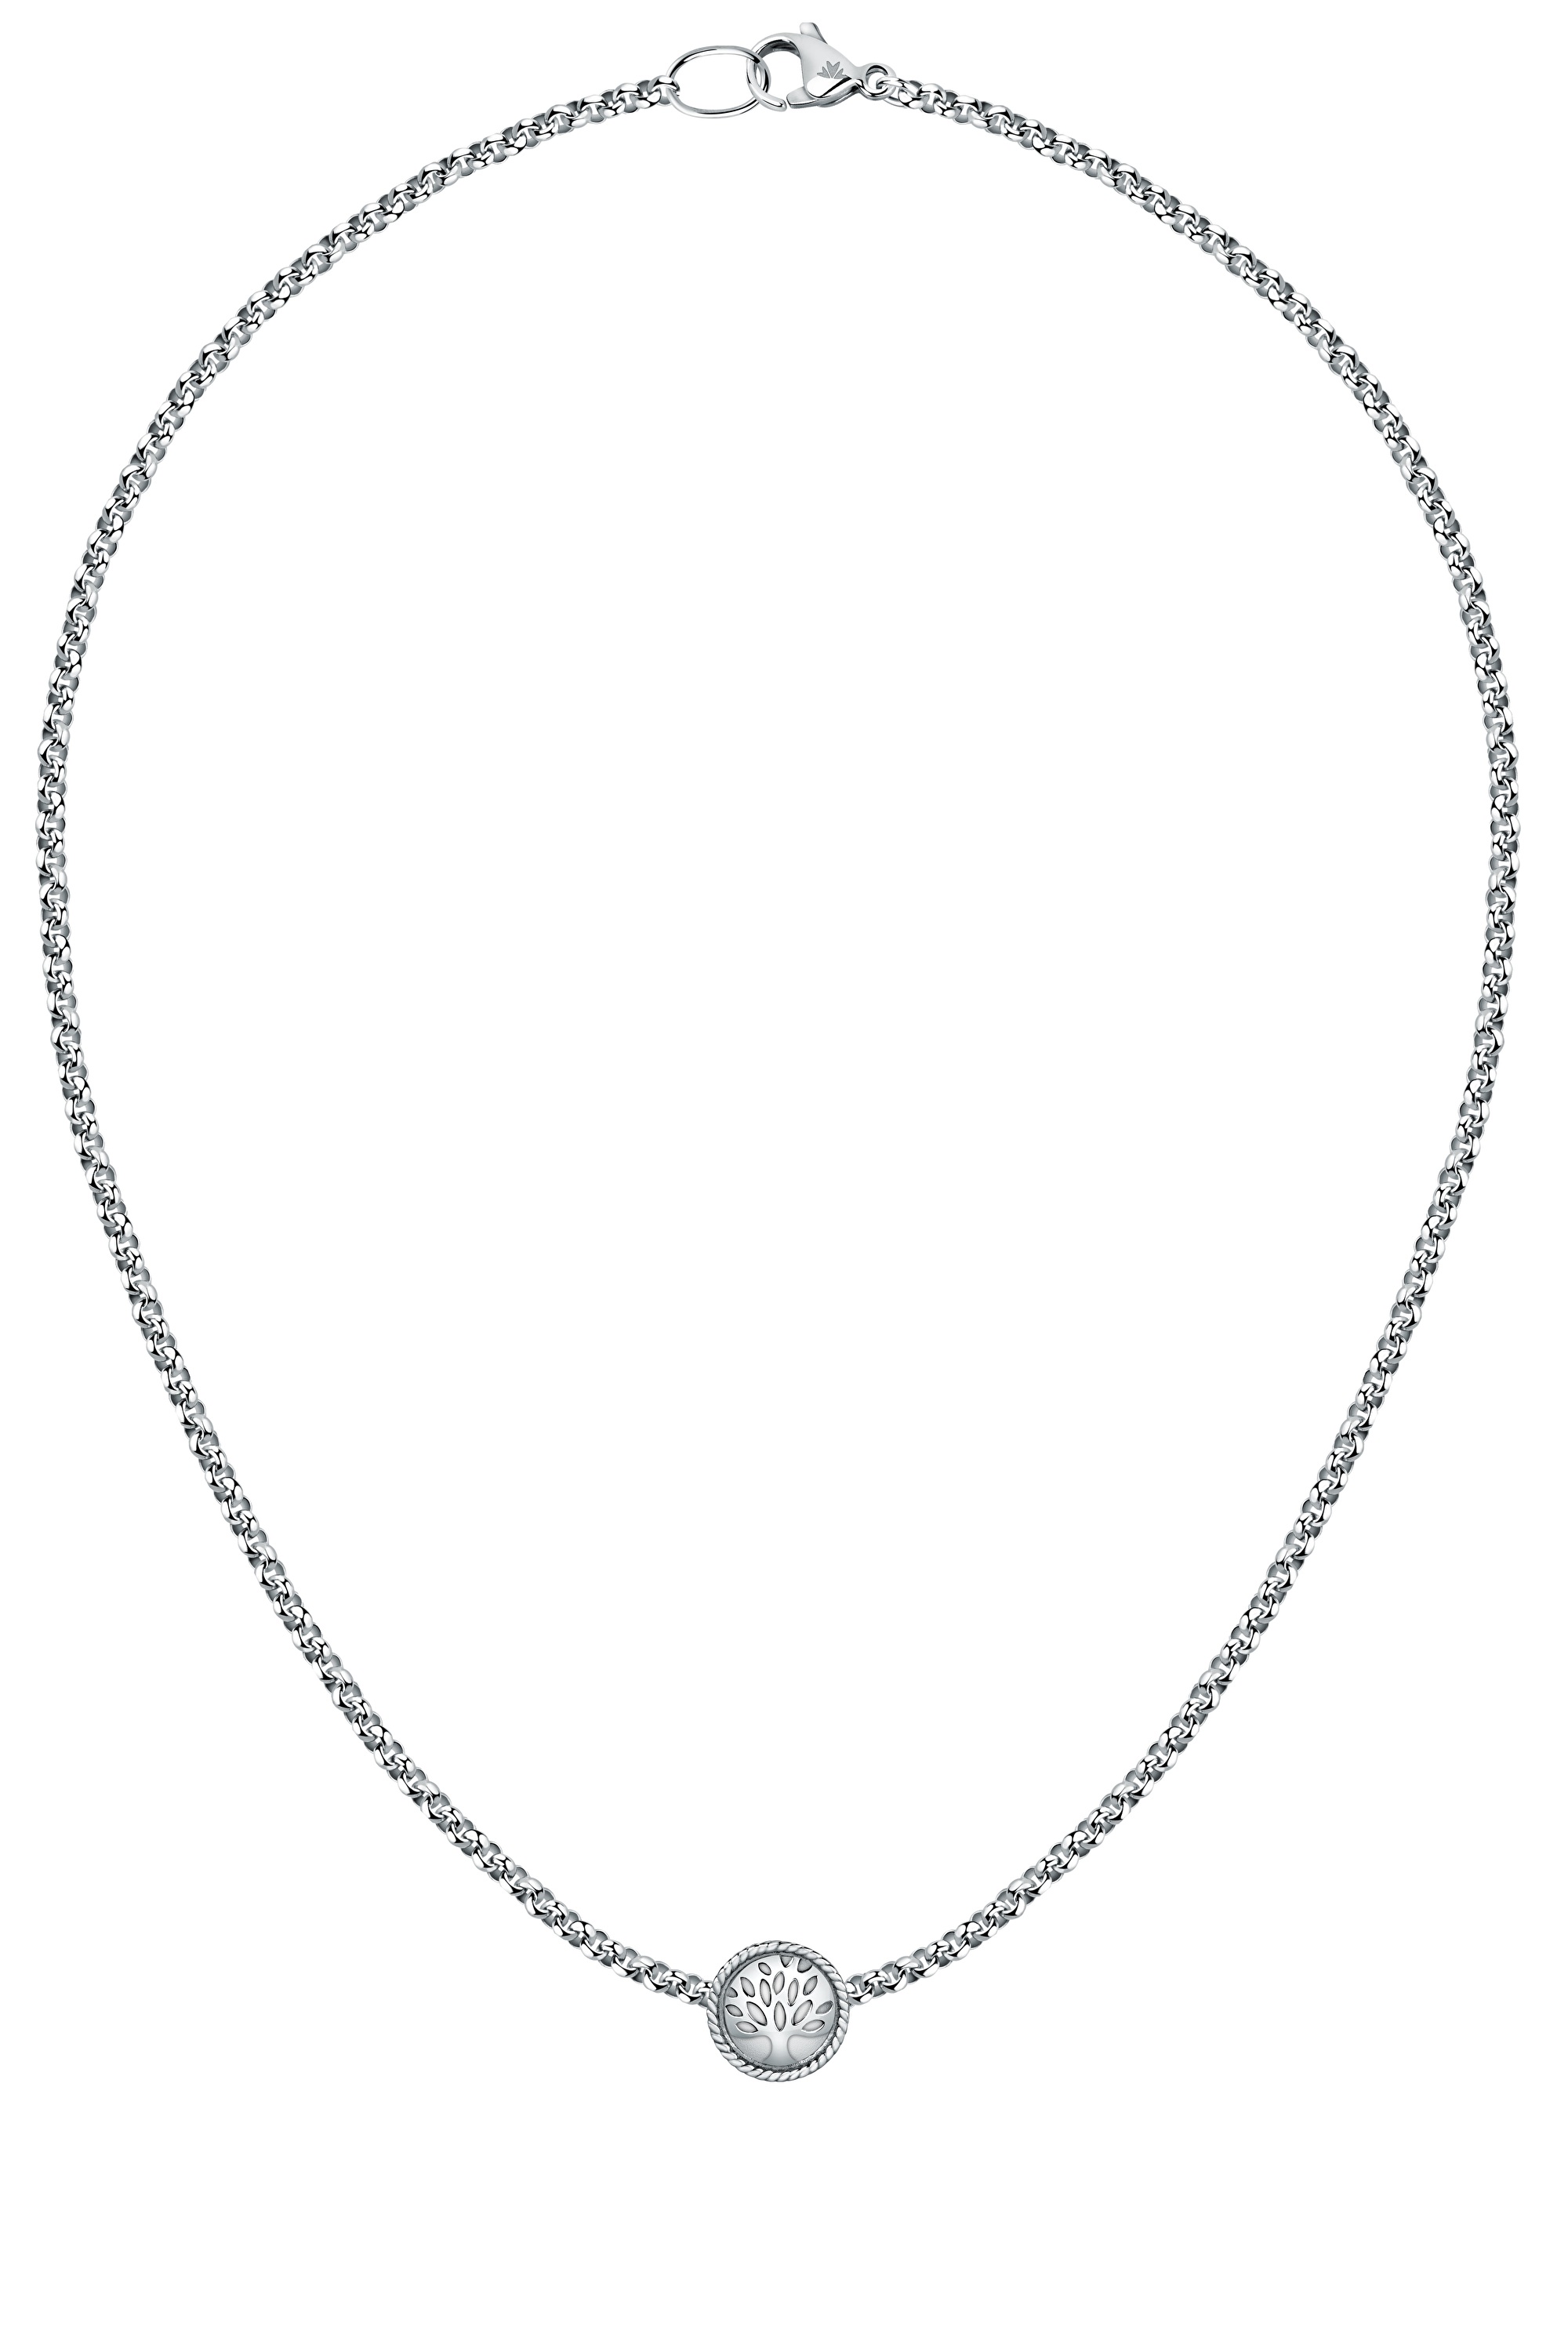 Morellato Nádherný ocelový bicolor náhrdelník Strom života Drops SCZ1265